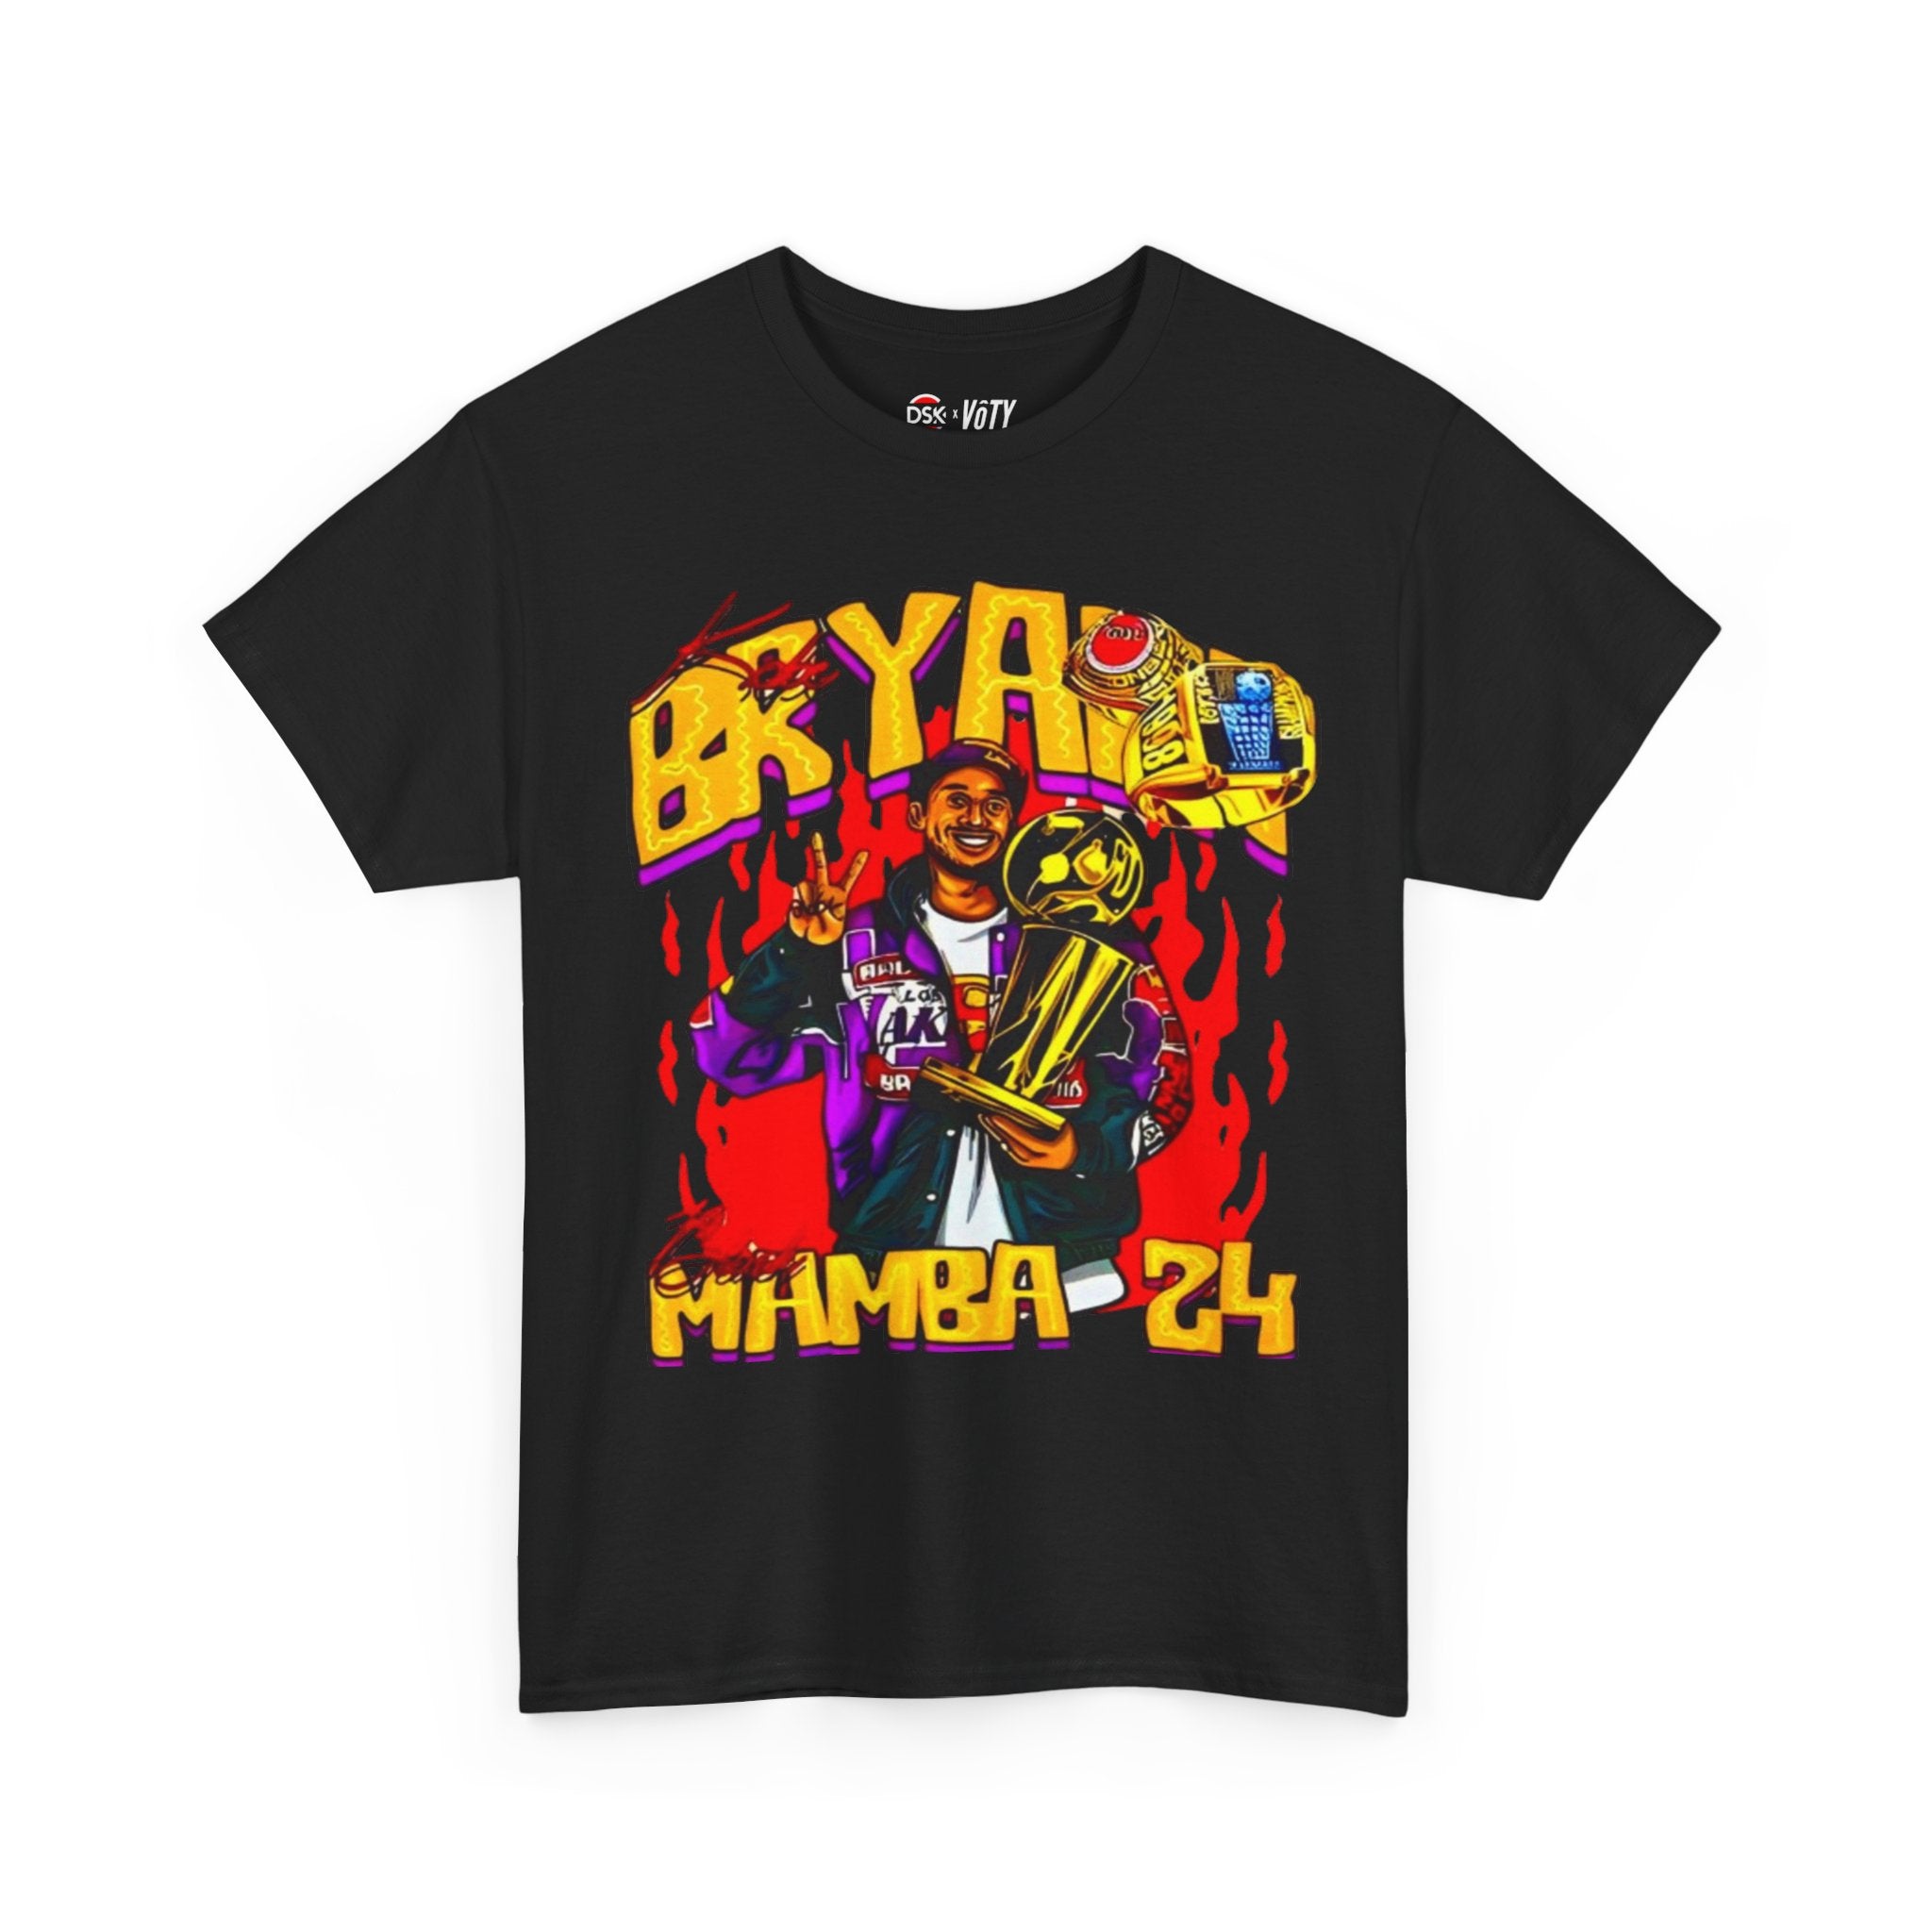 Kobe "Mamba" Bryant T-shirt